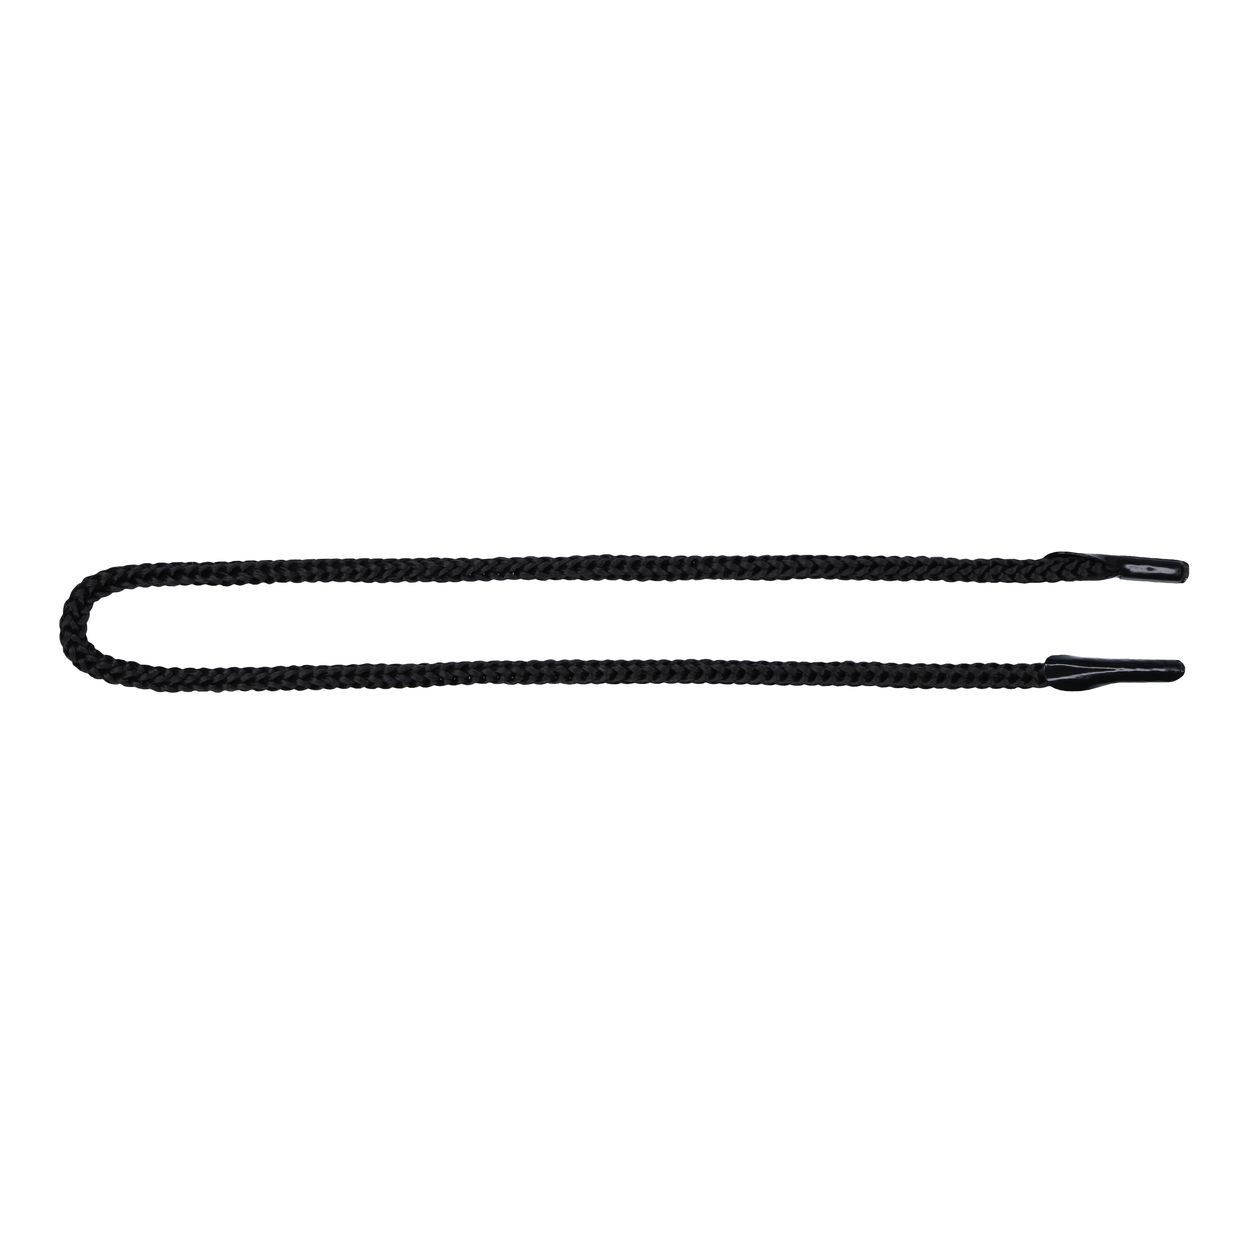 Шнурок для пакетов с крючком арт. 4В511 п/п, диам. 4 мм, дл. 35 см, № 365 ДС черный (уп. 50 пар)